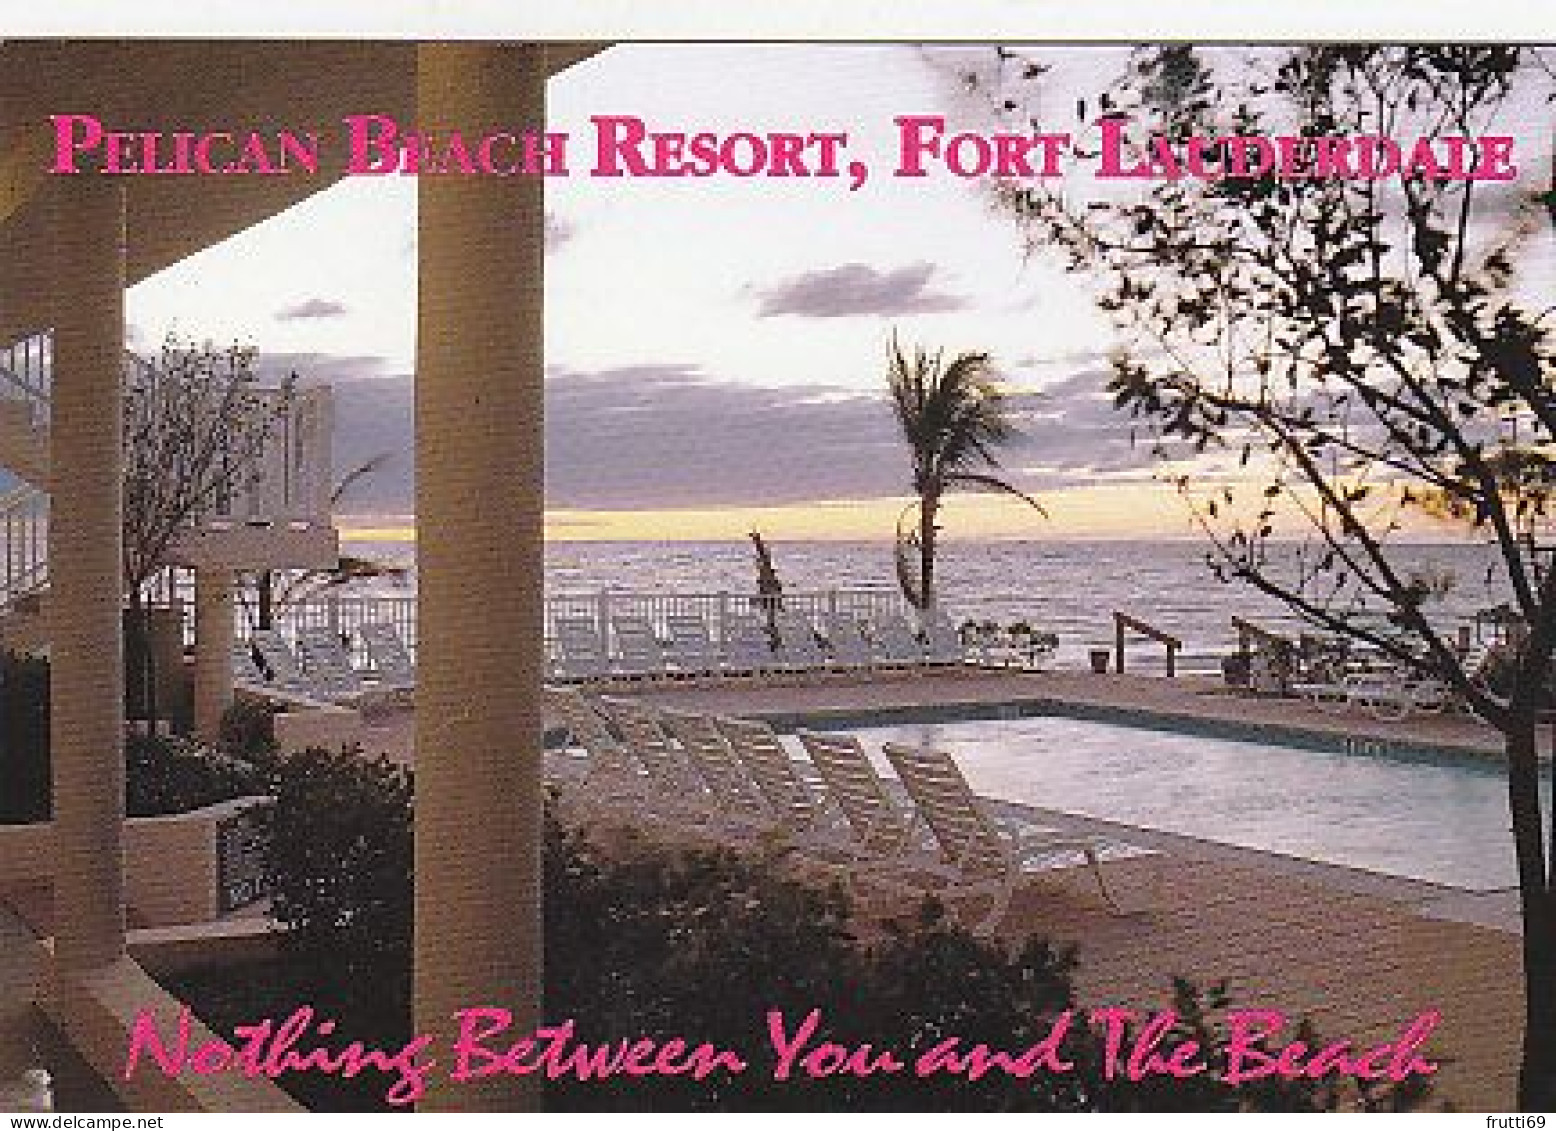 AK 194403 USA - Florida - Fort Lauderdale - Pelican Beach Resort - Fort Lauderdale